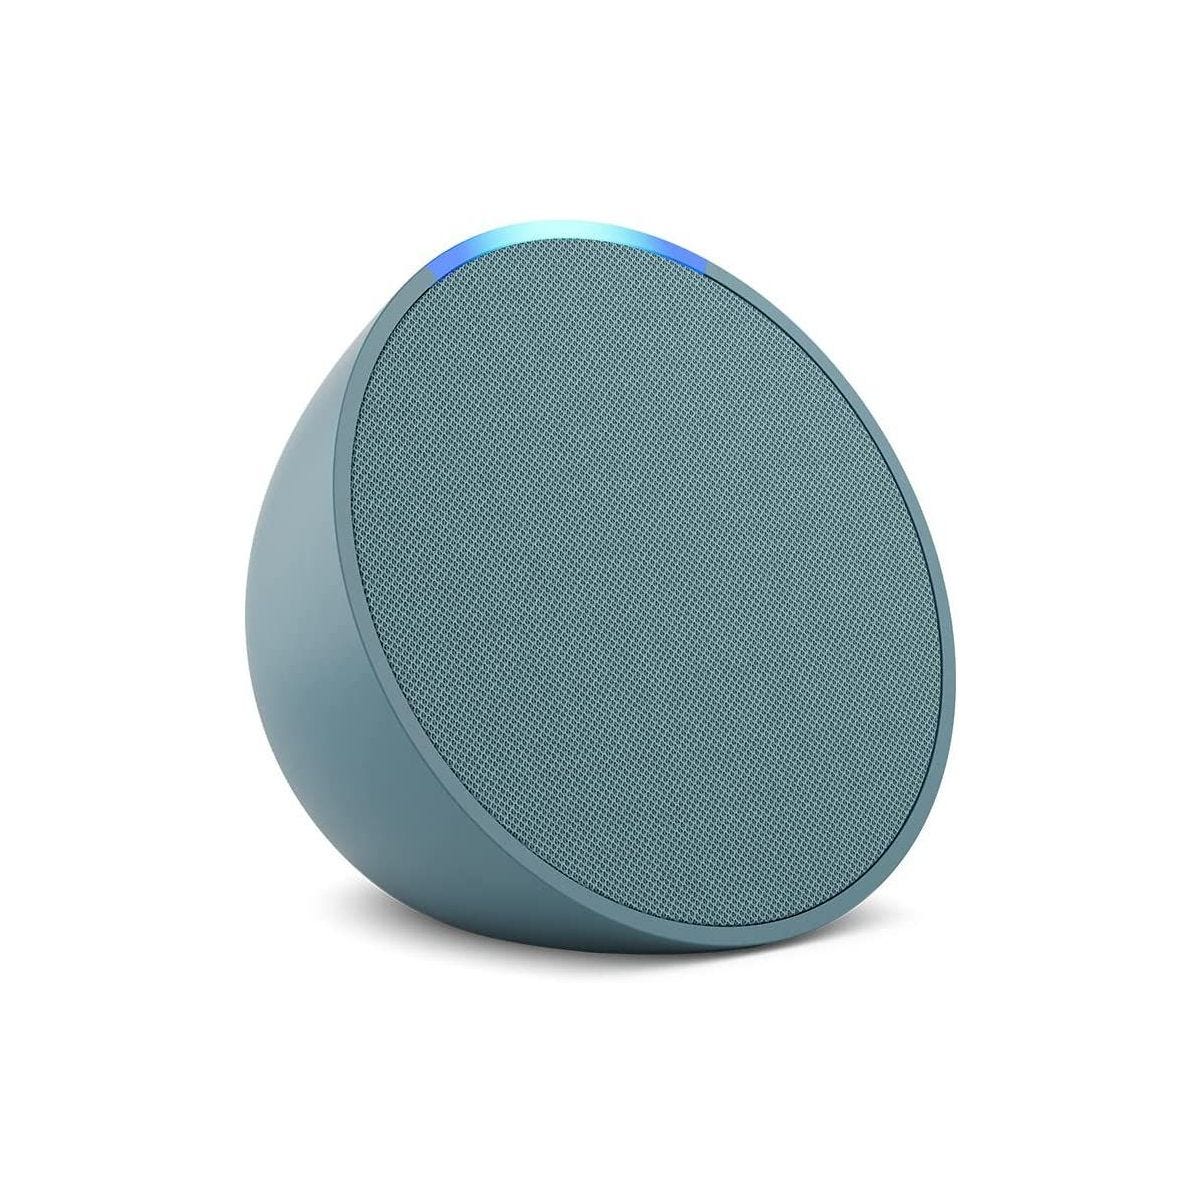 Echo Pop, Enceinte connectée Bluetooth compacte au son riche, avec Alexa